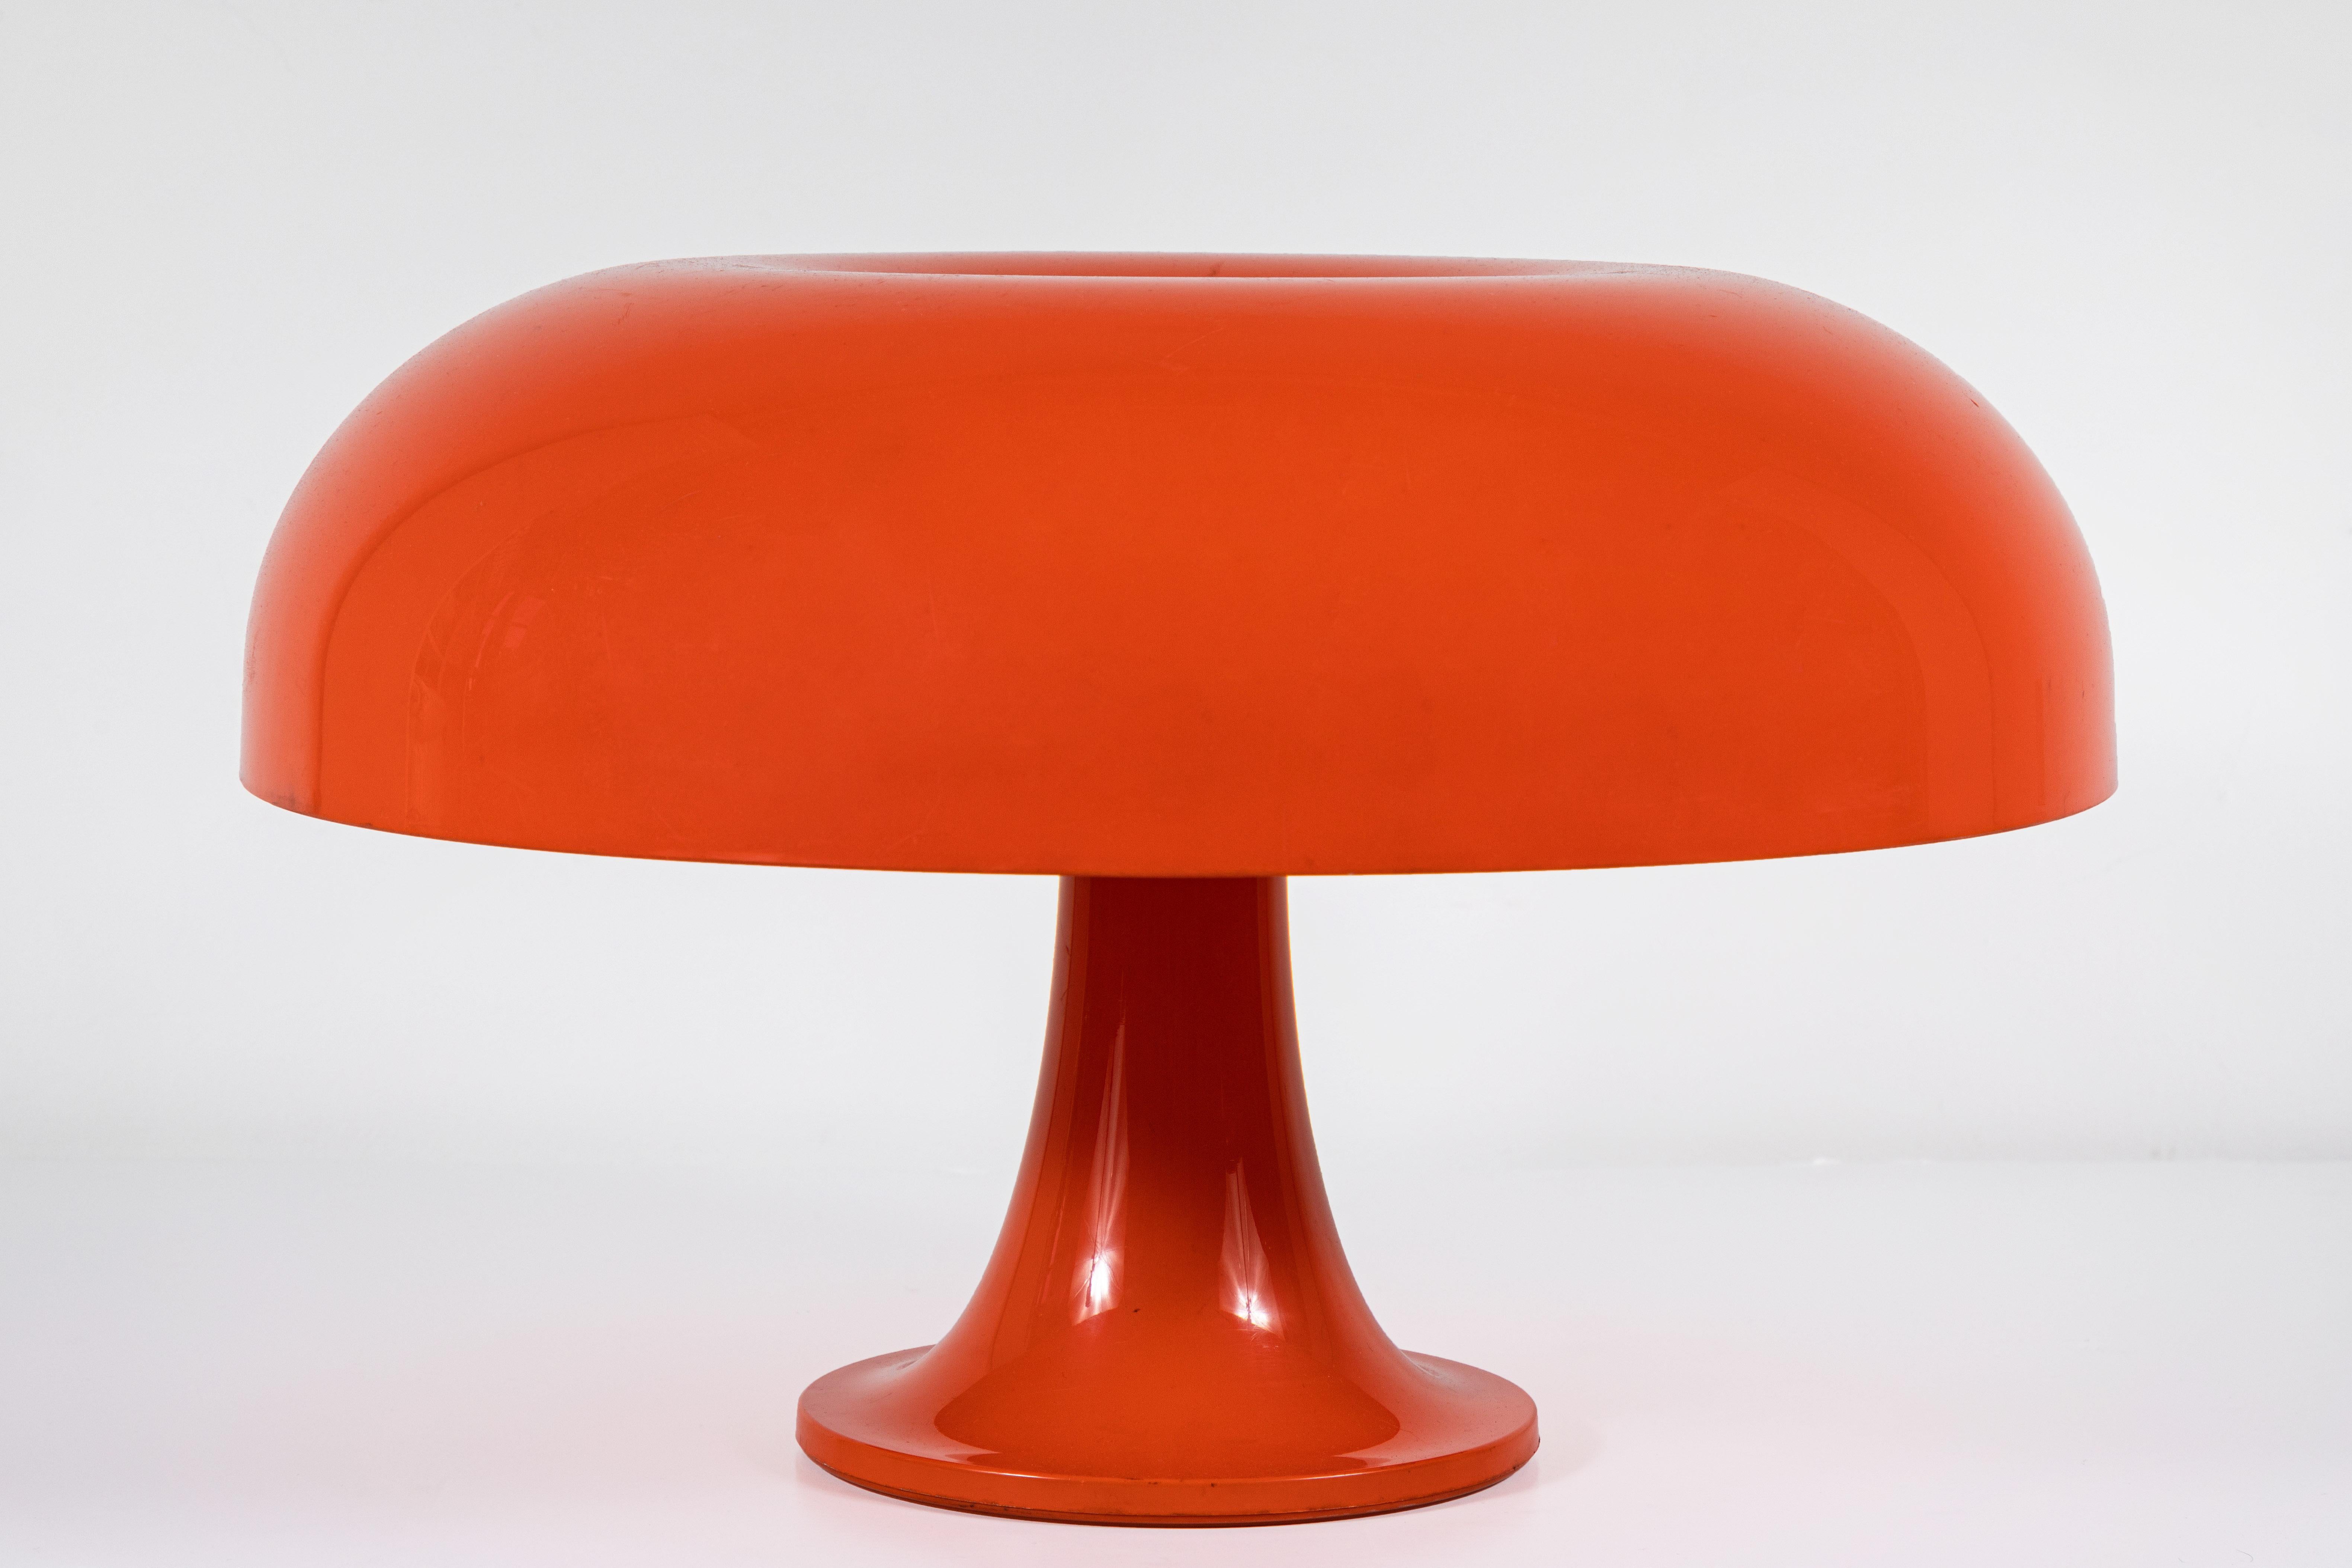 Iconic table lamp in orange molded plastic designed by Giancarlo Mattioli, Gruppo Architetti Urbanisti 